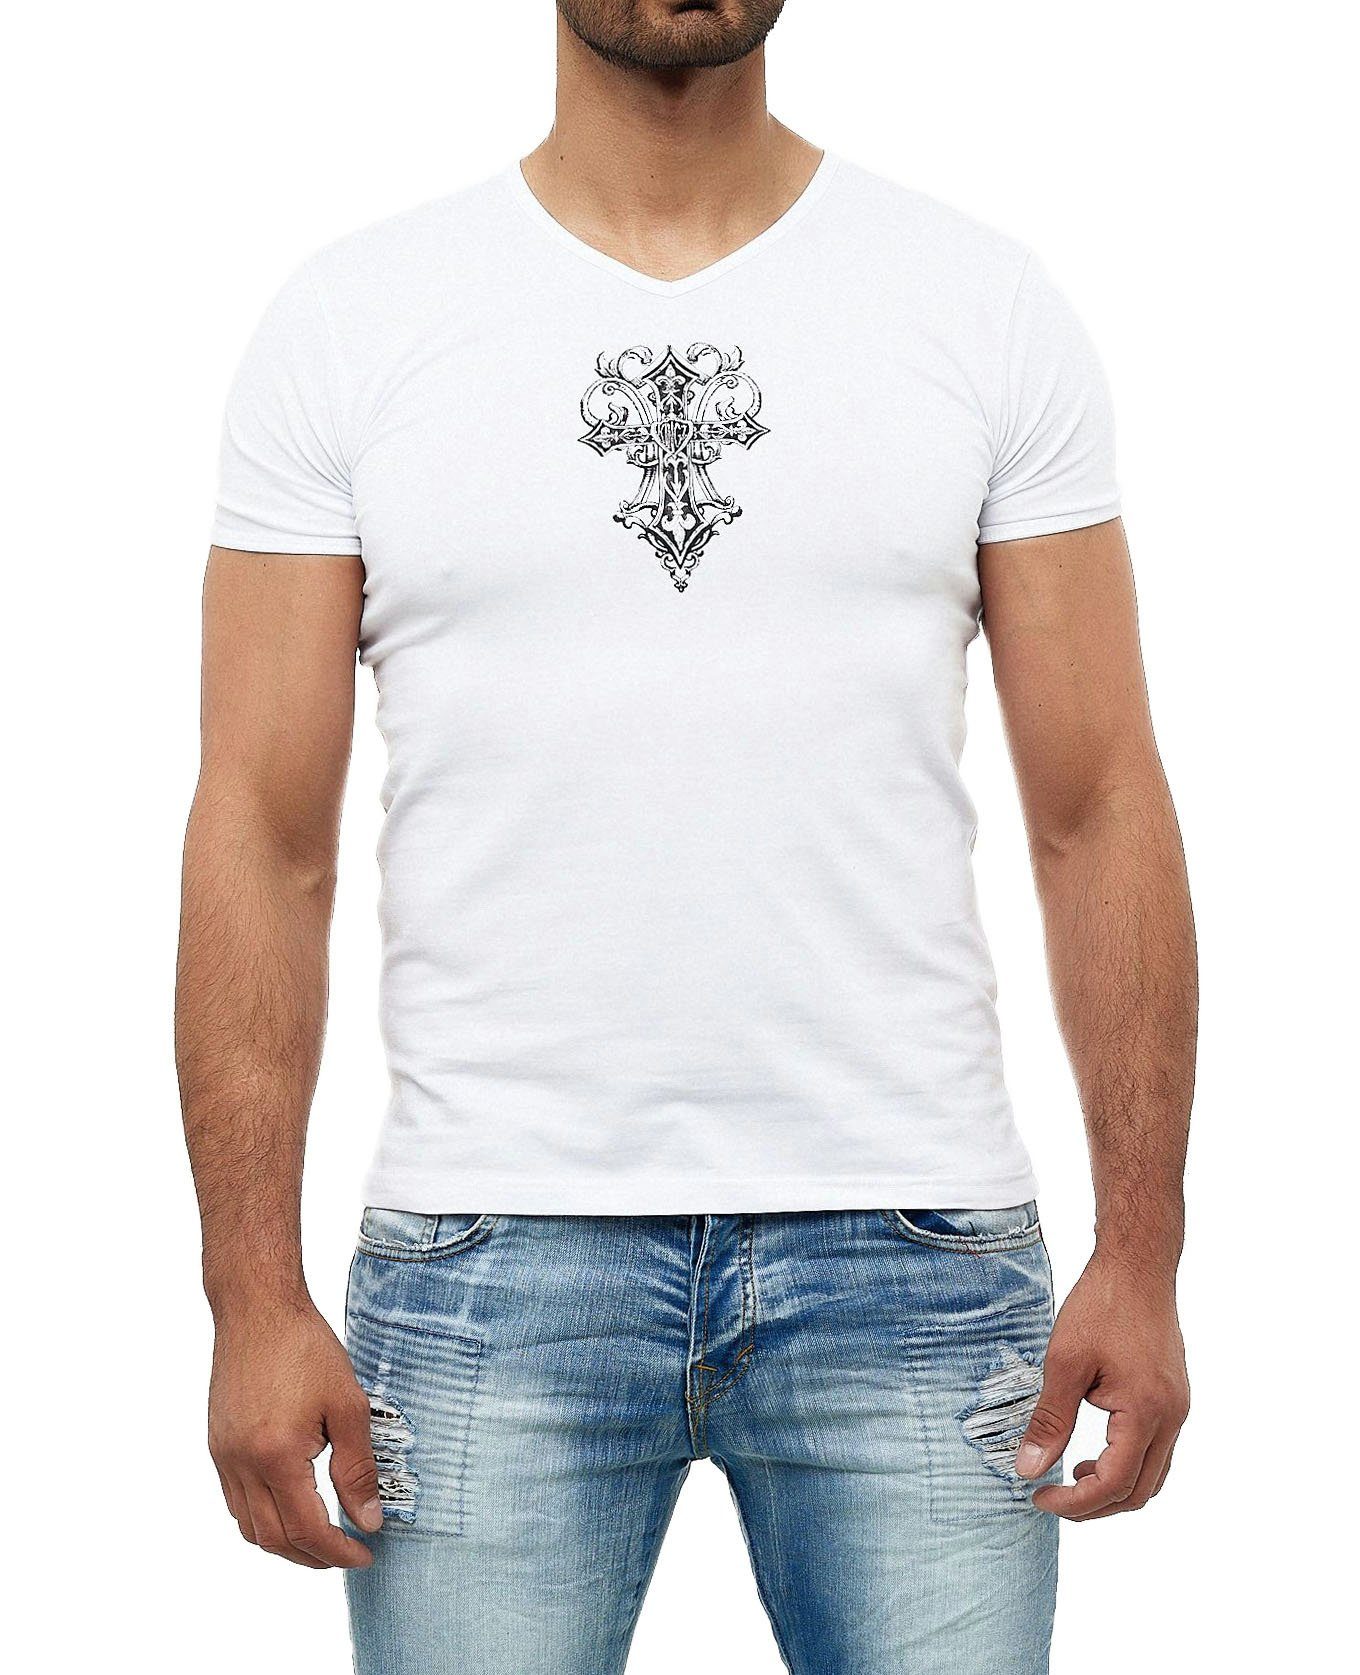 KINGZ T-Shirt in ausgefallenem Design weiß-silberfarben | T-Shirts